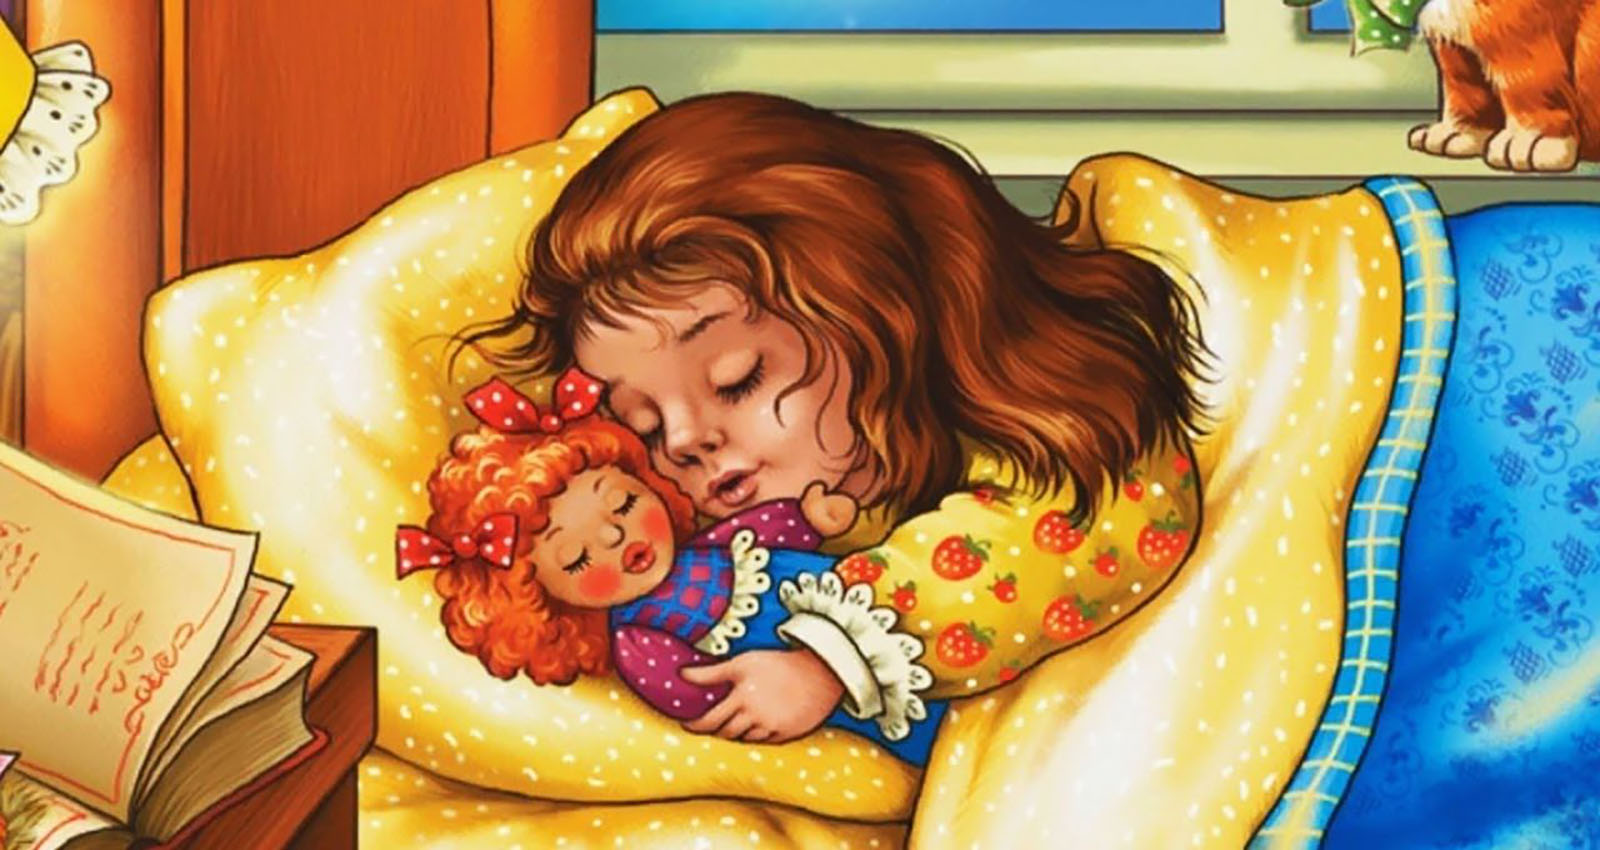 Уложим куклу спать. Колыбельная для детей. Колыбельная для дочери. Колыбельная для Дочки текст. Колыбельная для доченьки слова.